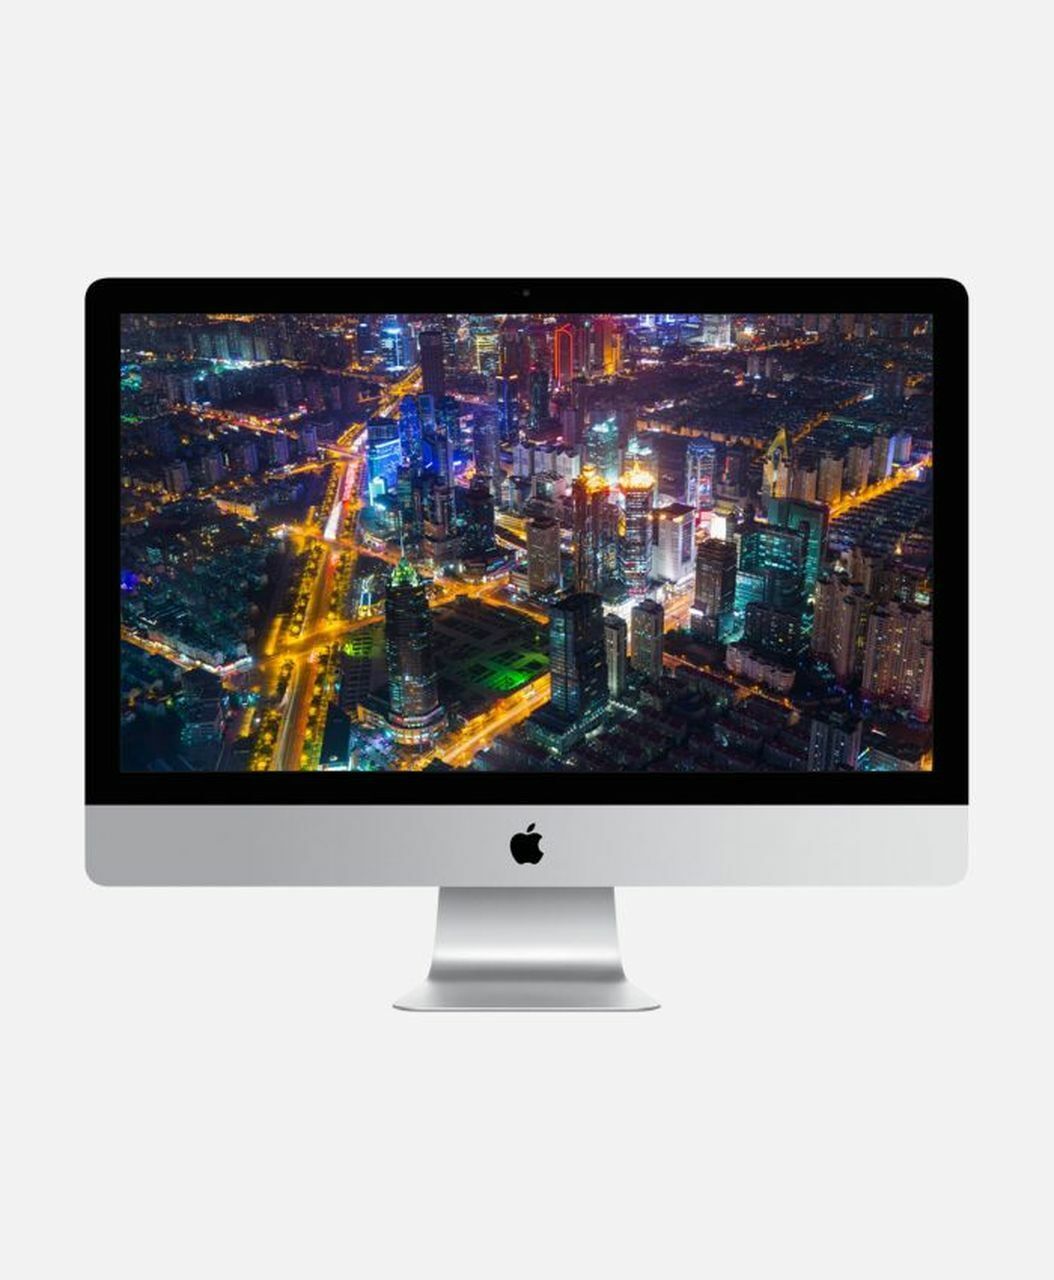 Apple iMac 21.5 inch Mk442ll/a Monterey 2.8Ghz - 8GB Ram 1TB HDD - Late 2015  